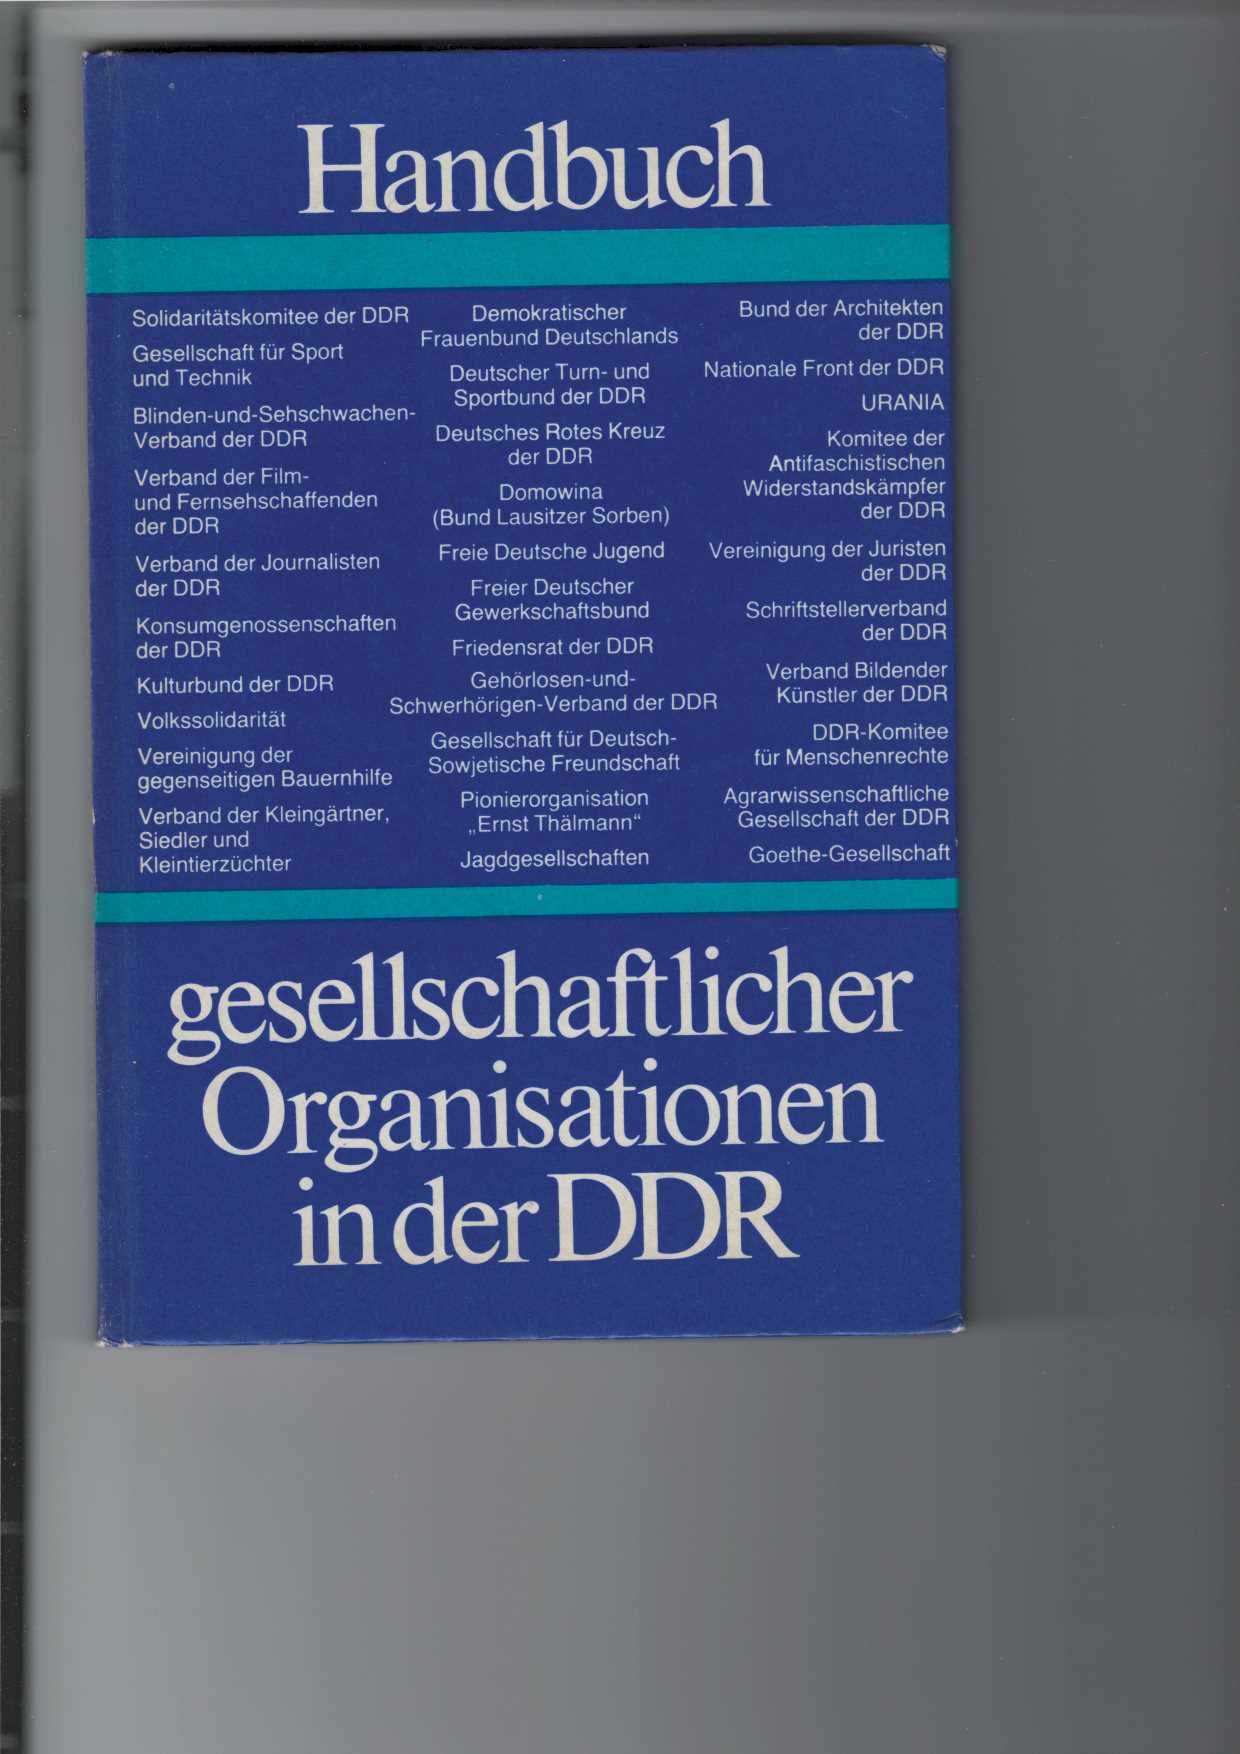 Handbuch gesellschaftlicher Organisationen in der DDR.